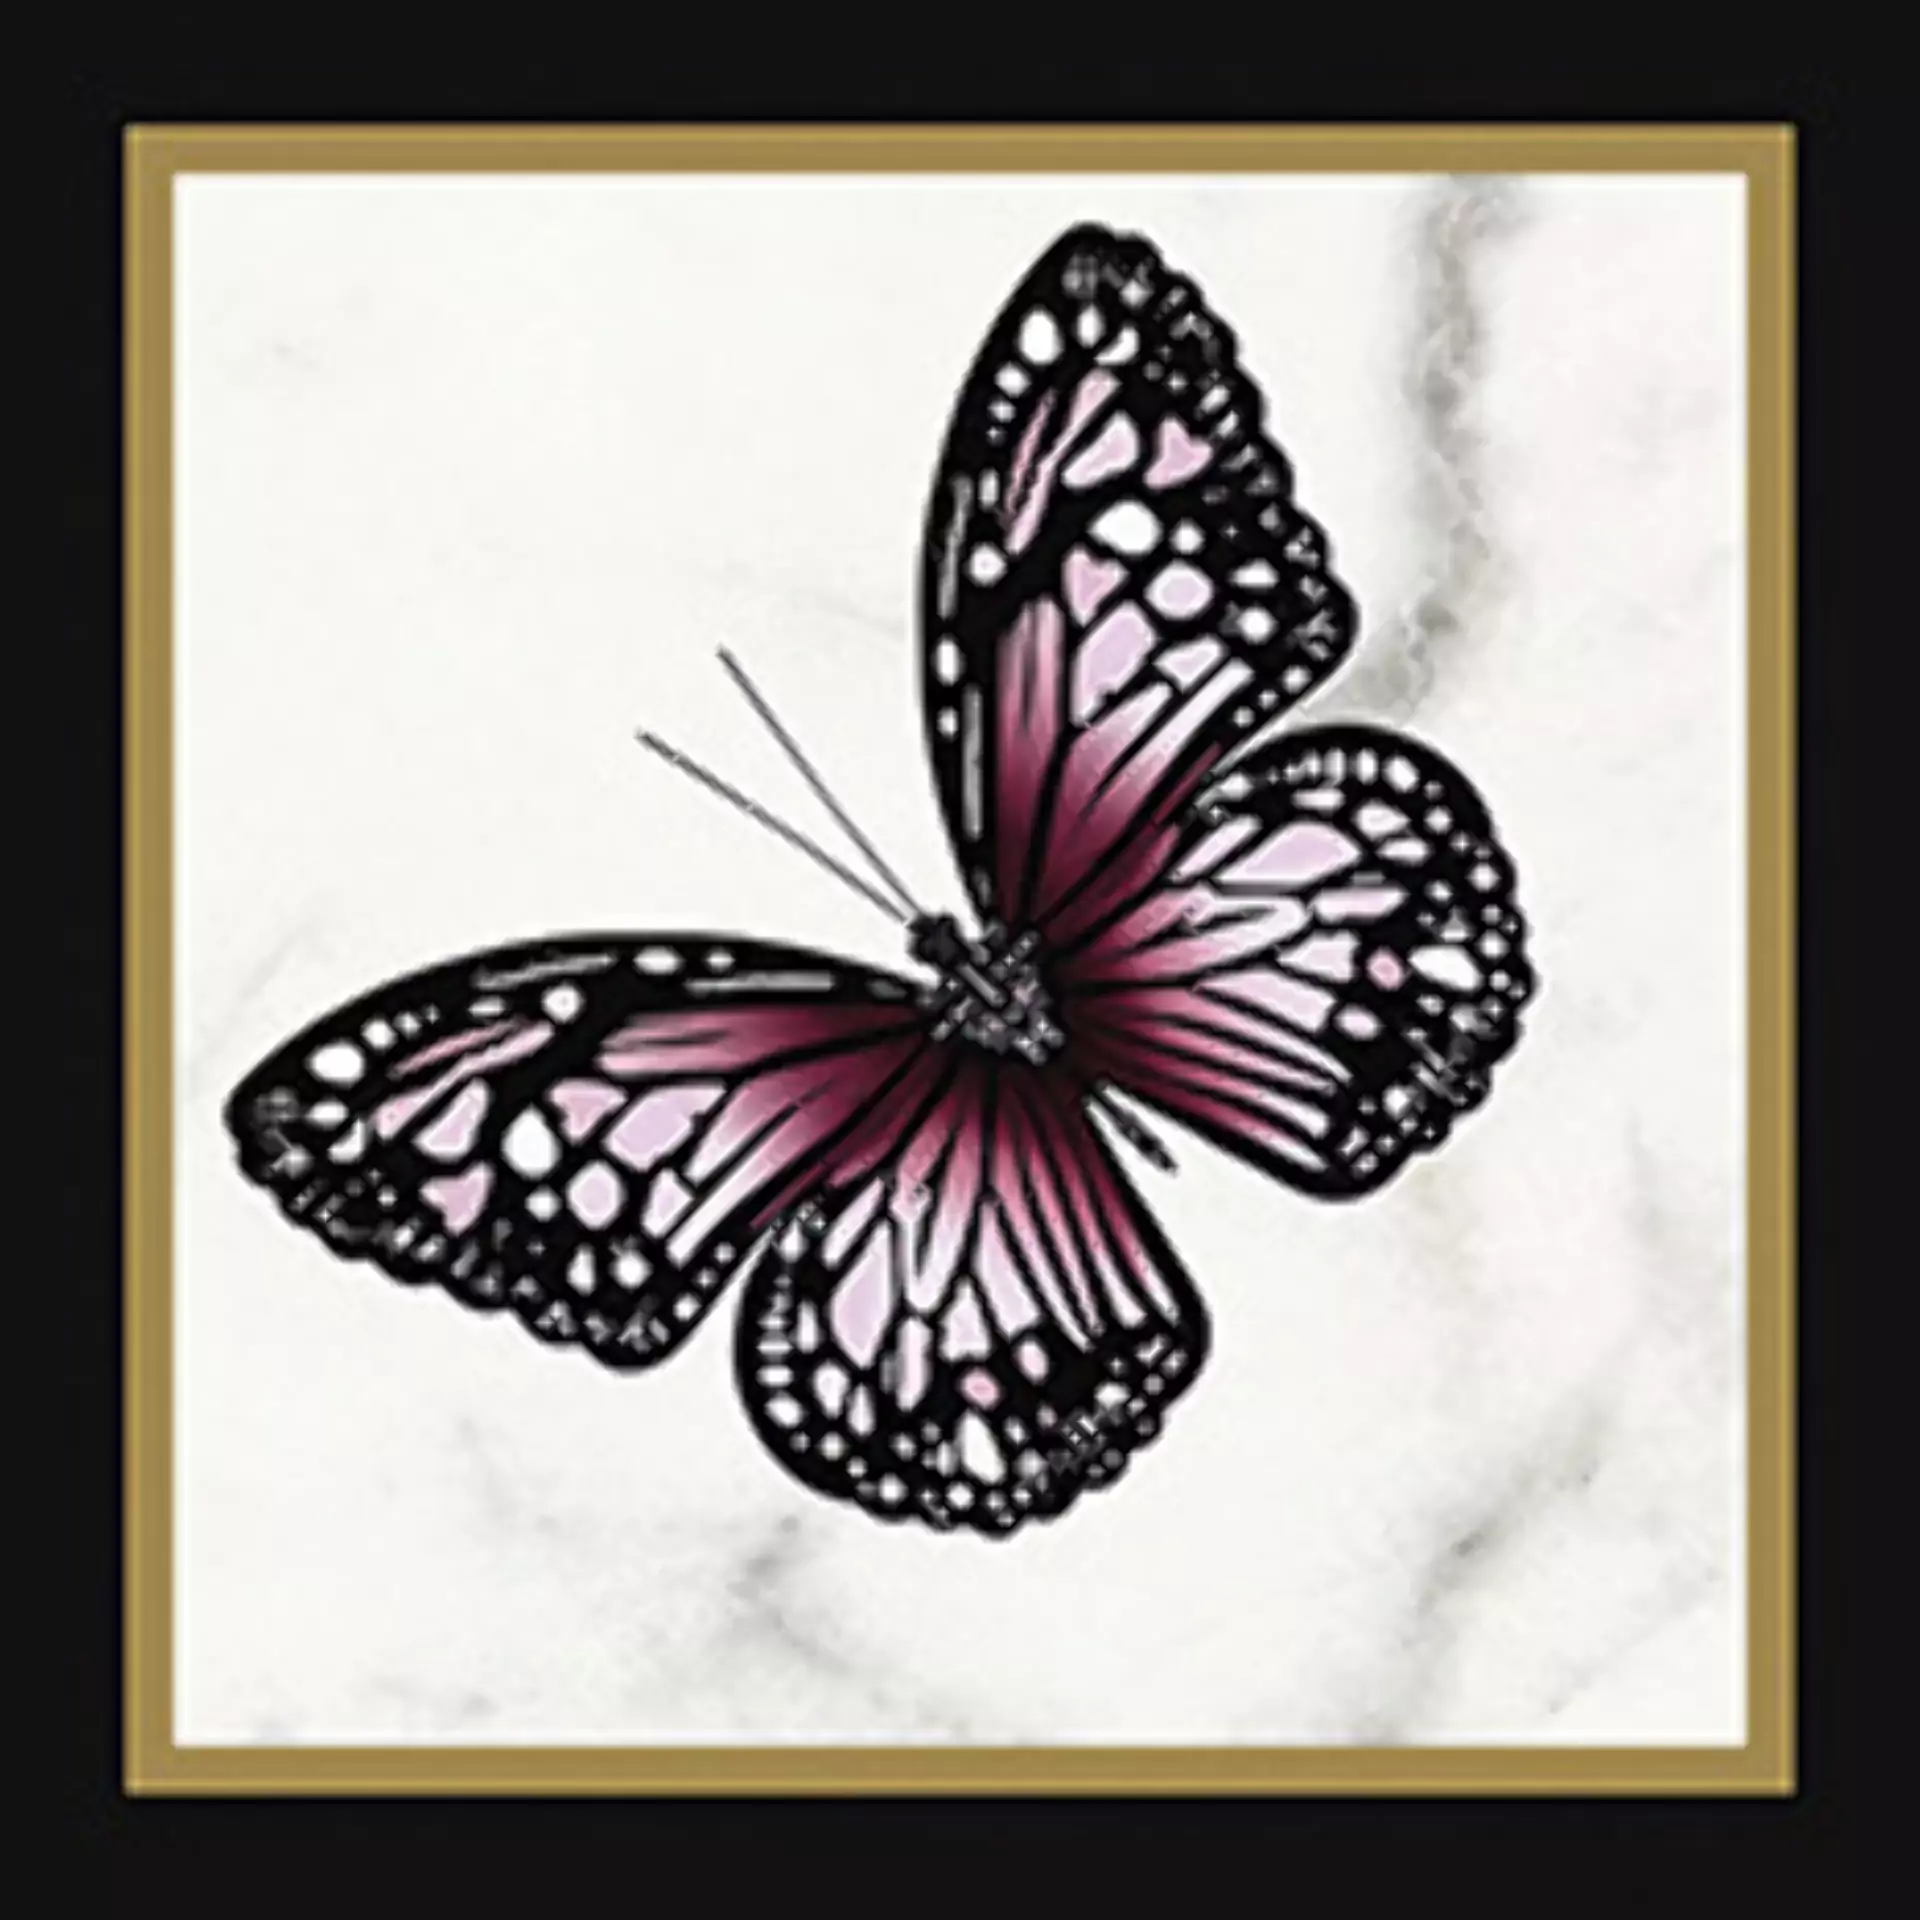 Wandfliese Villeroy & Boch Victorian Black - White Glossy Black - White 1222-MK0D glaenzend 20x20cm Dekor Butterfly 45 rektifiziert 10mm